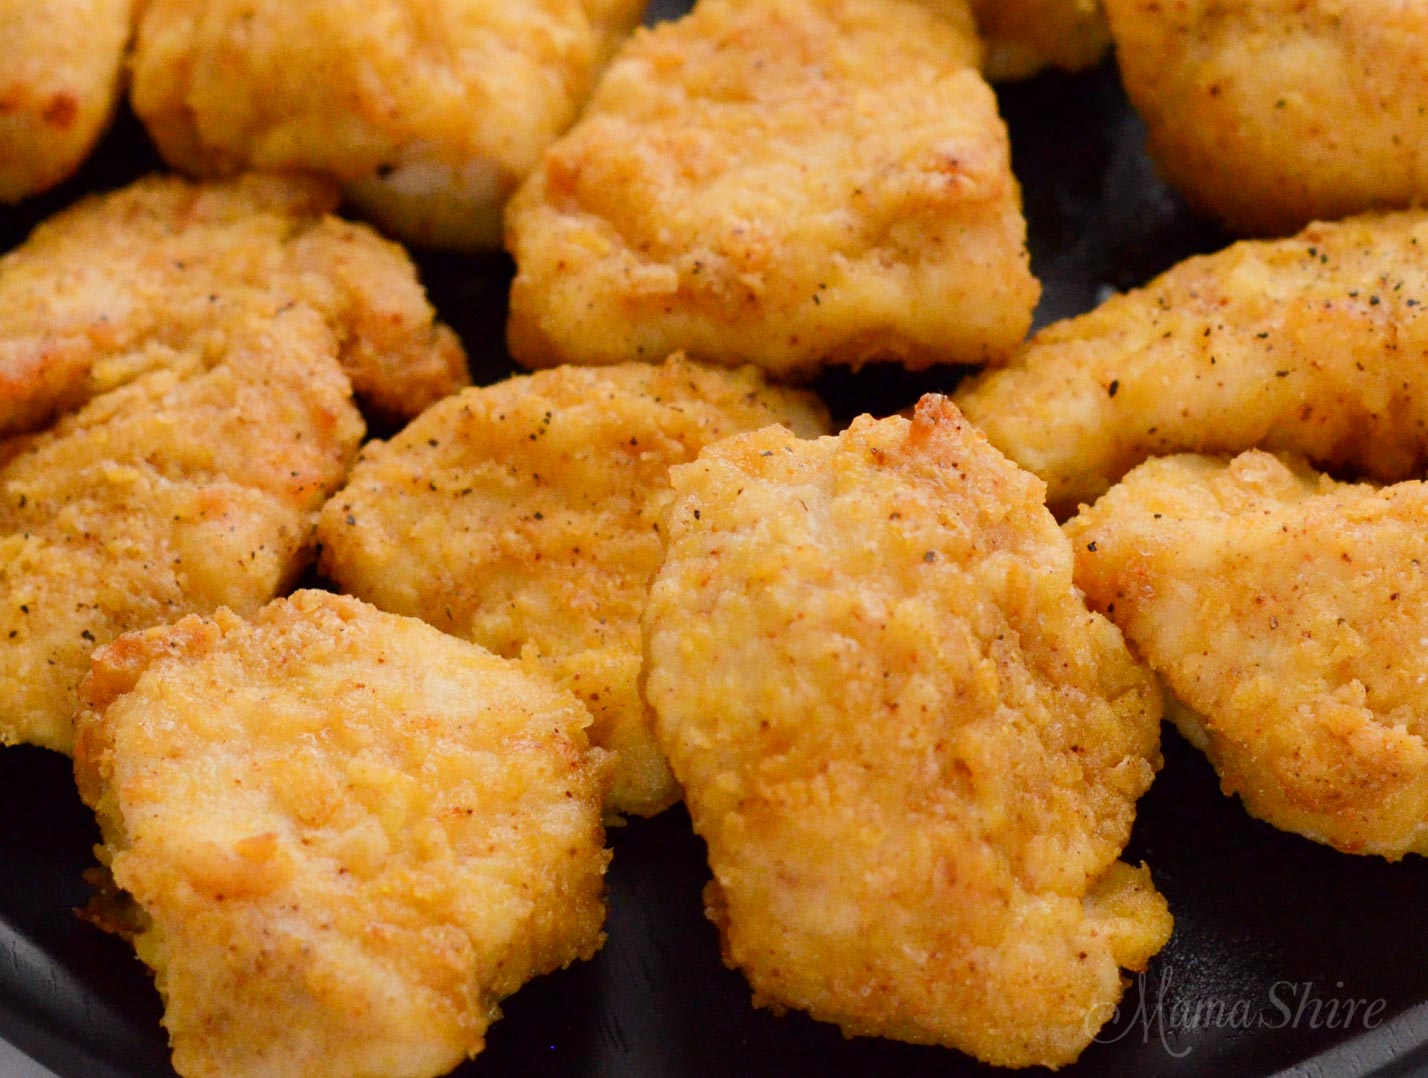 Gluten-free air fryer chicken nuggets